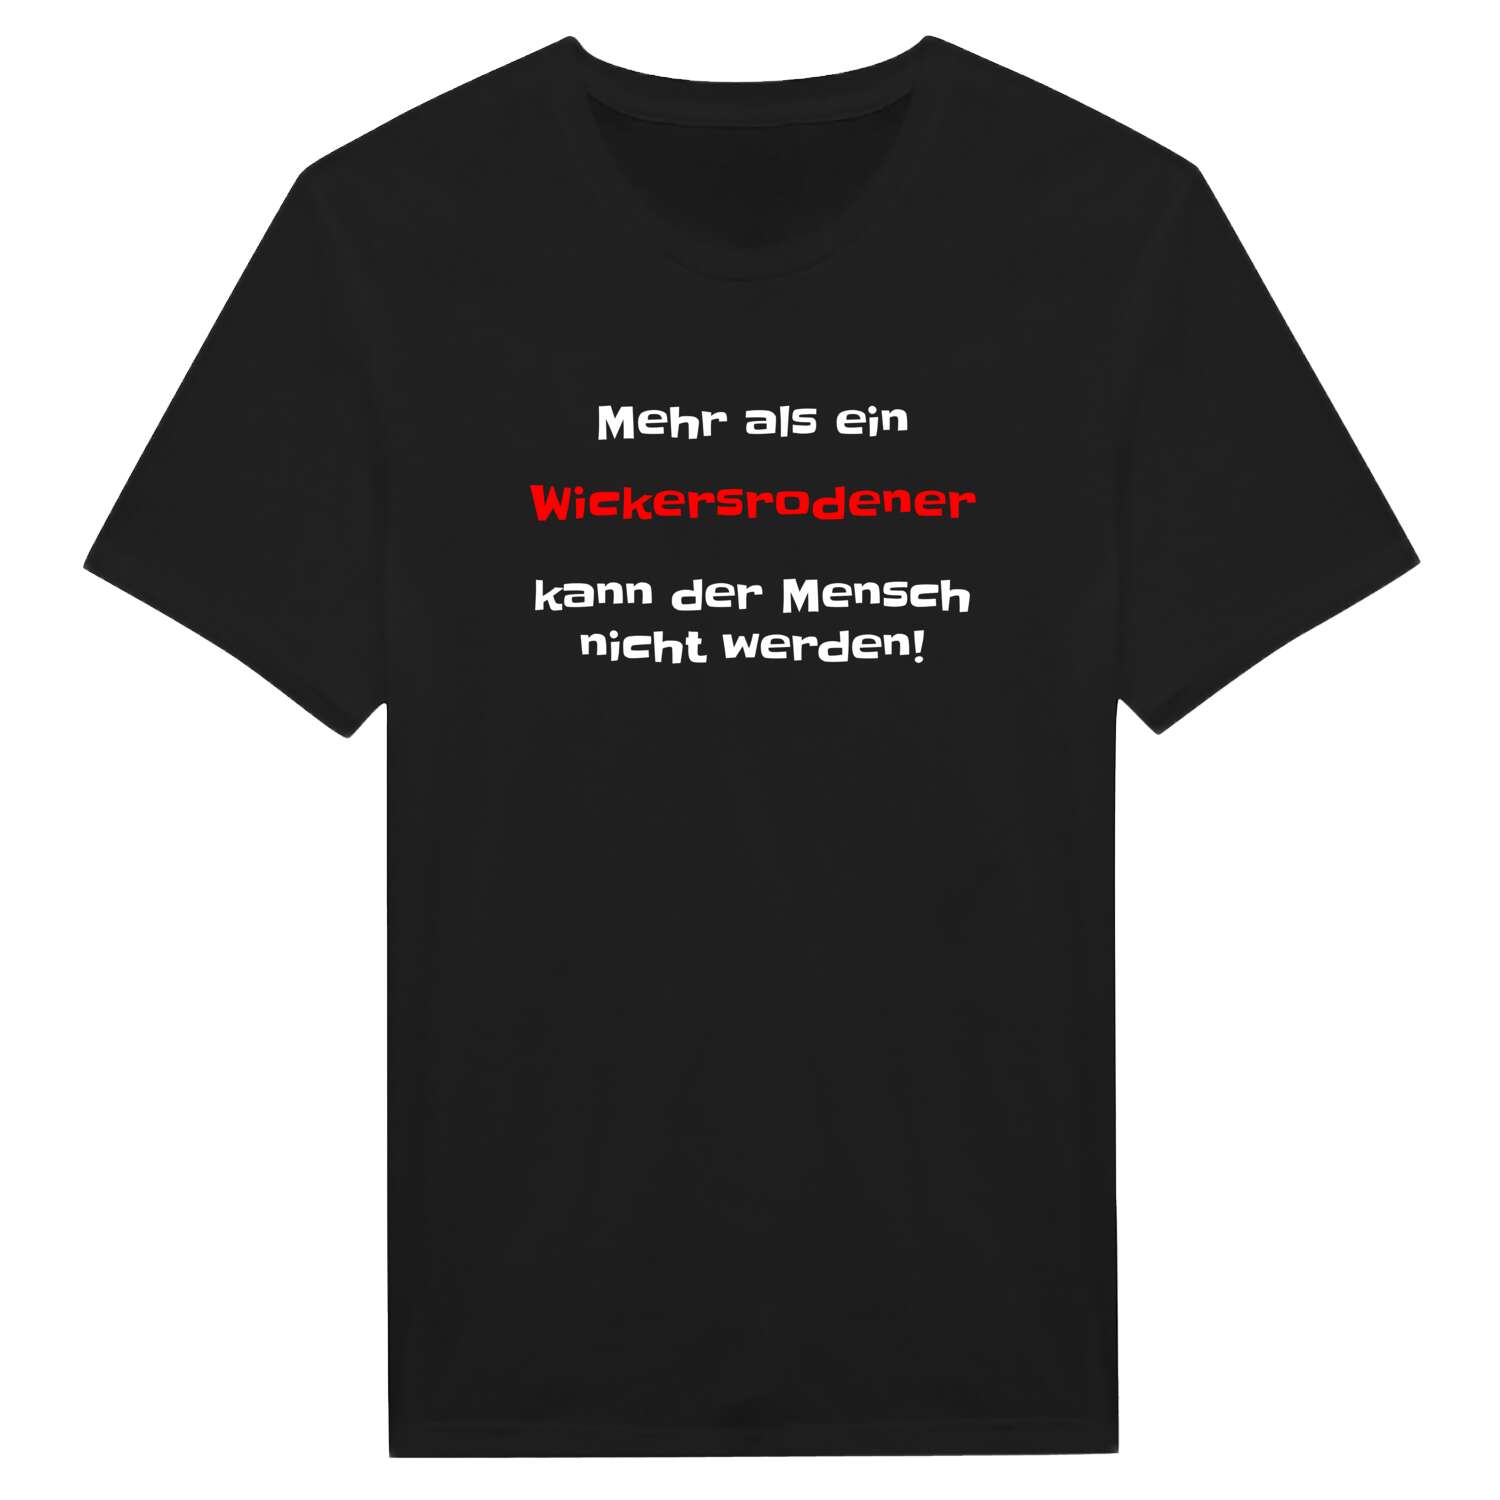 Wickersrode T-Shirt »Mehr als ein«